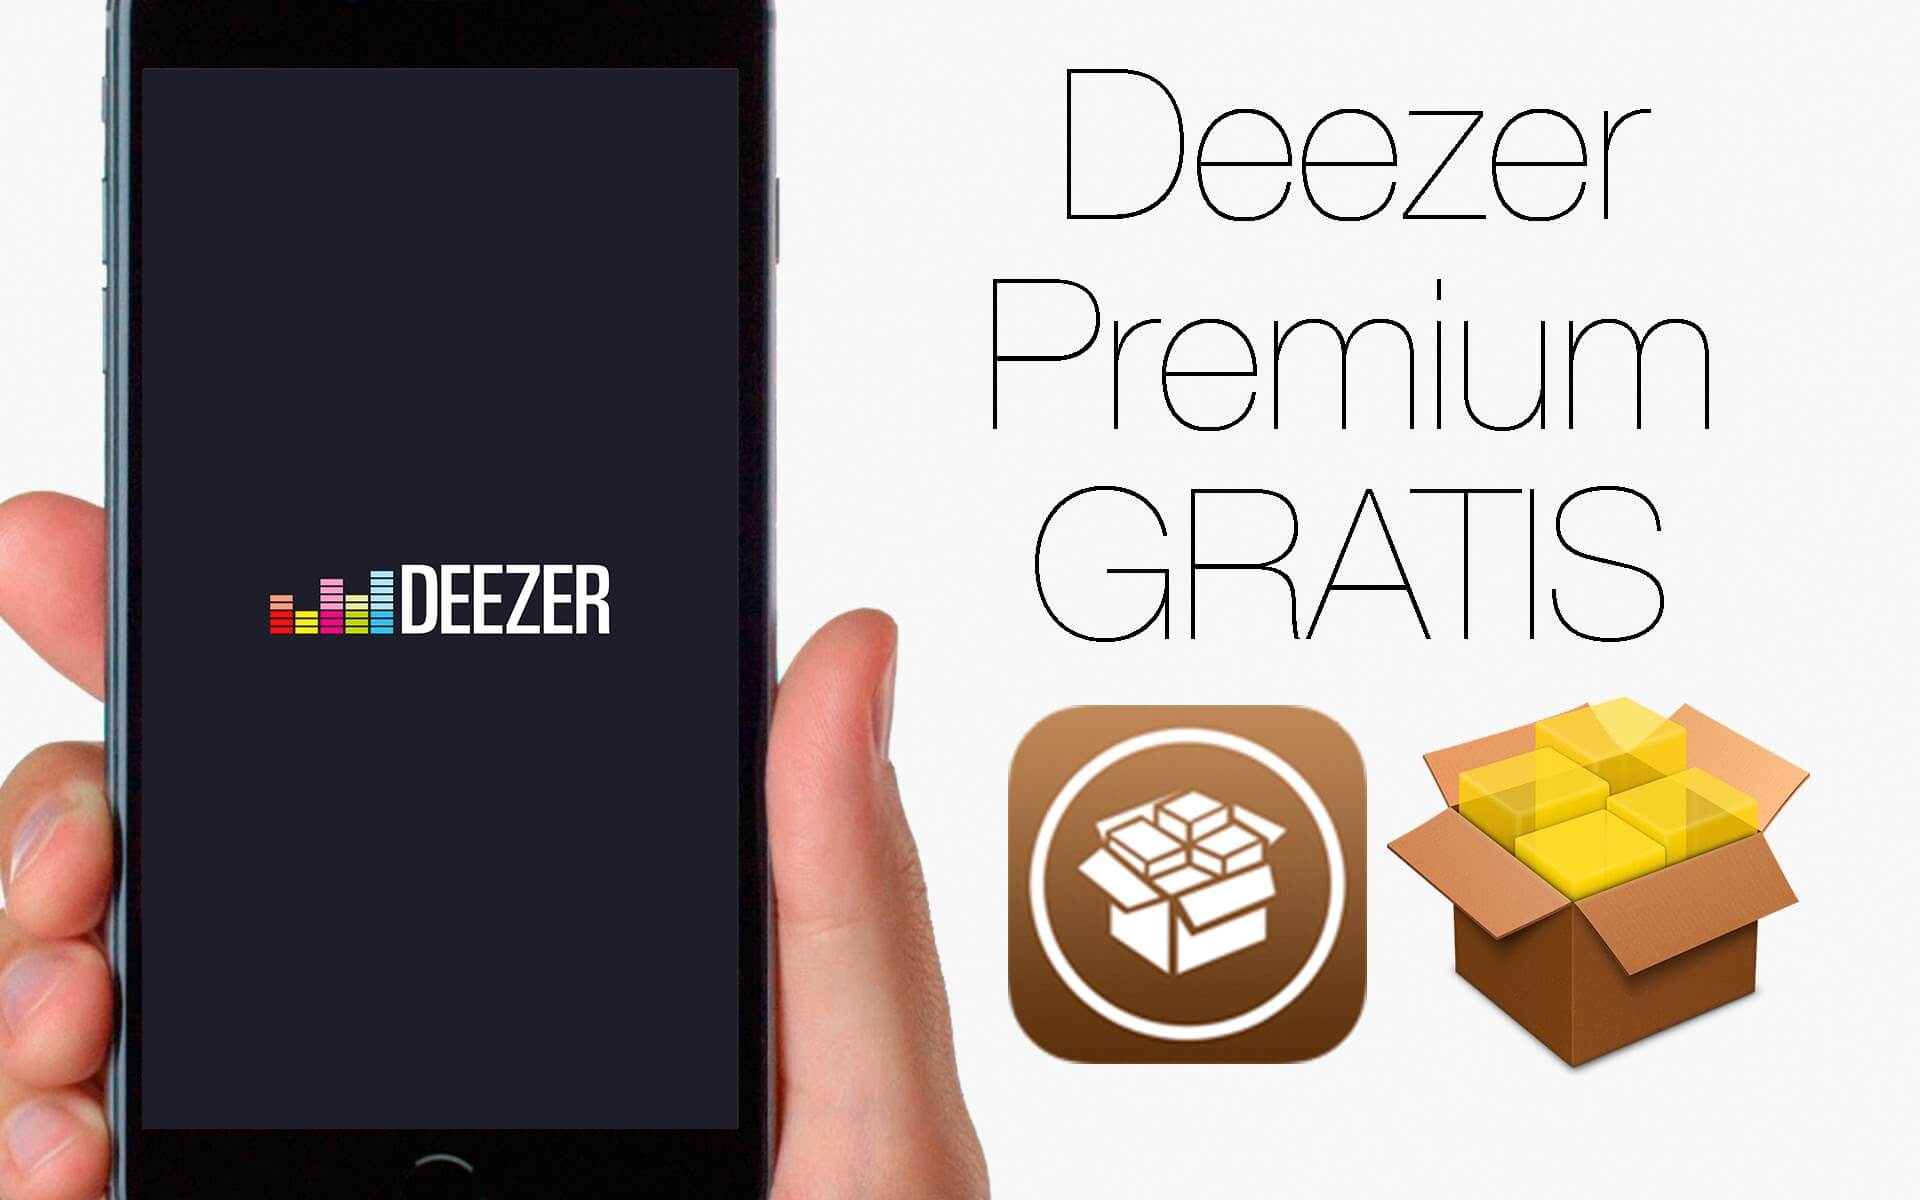 How to Get Deezer Premium for Free?